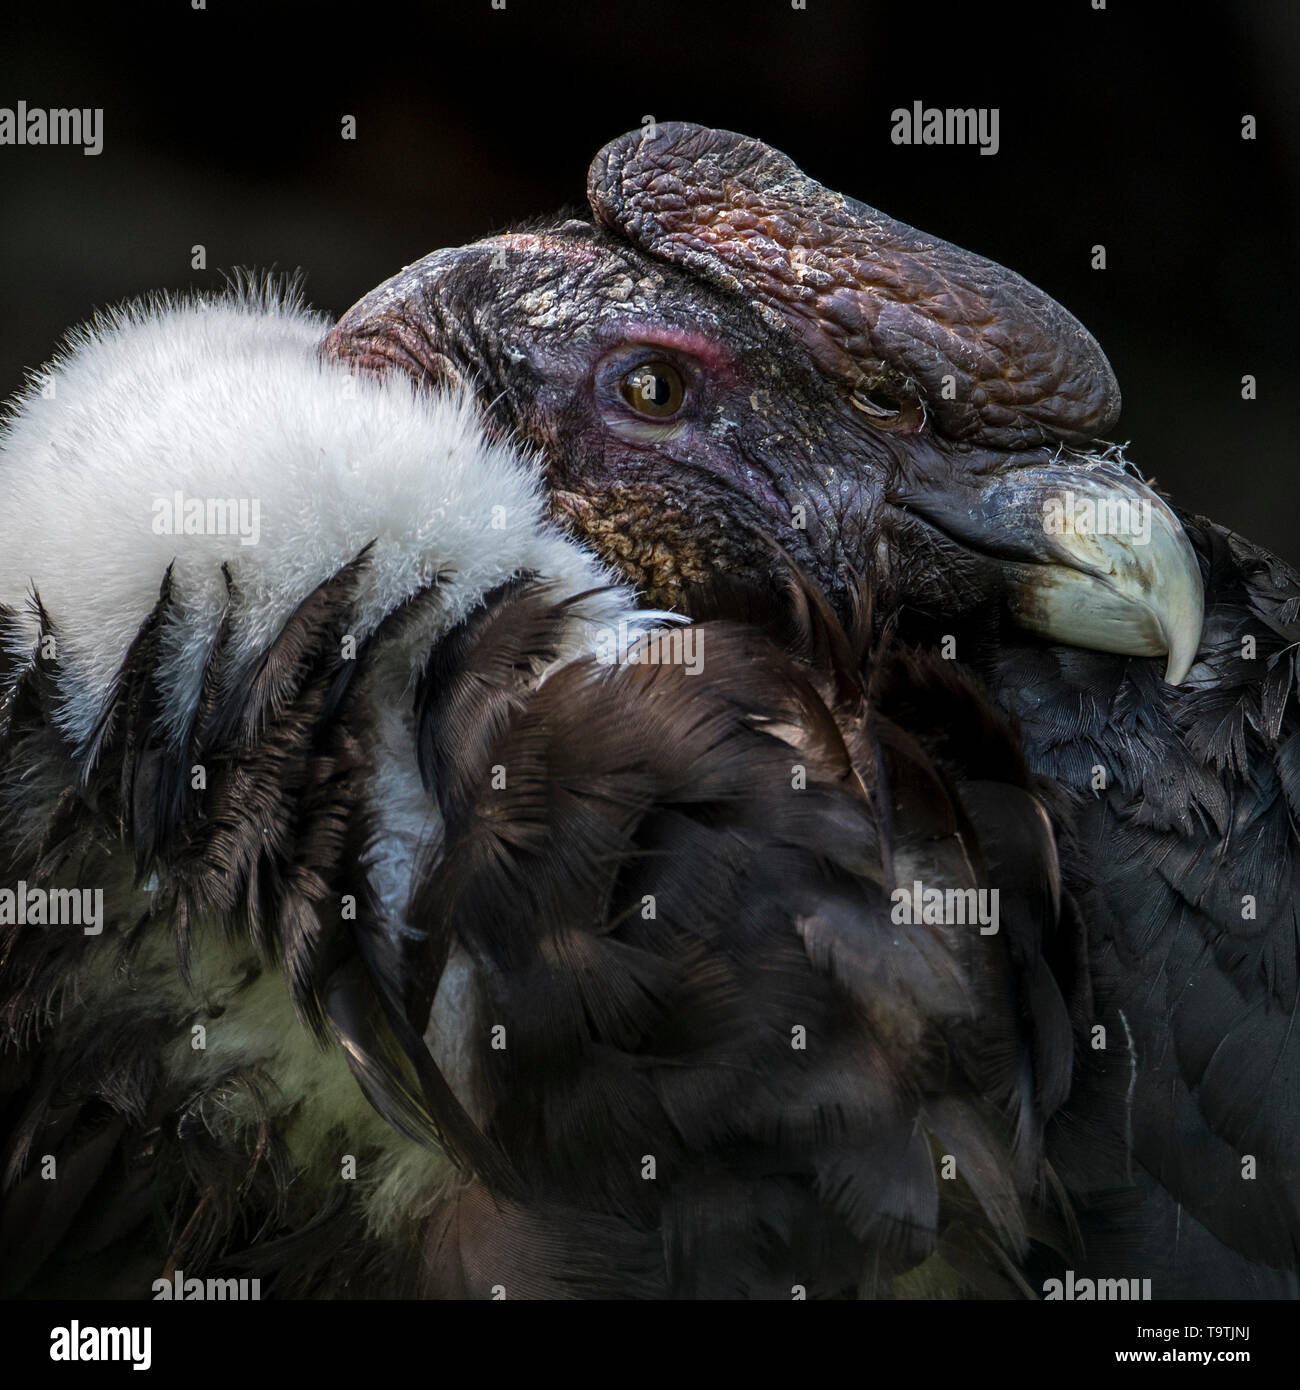 Condor andino chileno / Condor (Vultur gryphus), Nuevo Mundo buitre nativo de los Andes, Sudamérica Foto de stock